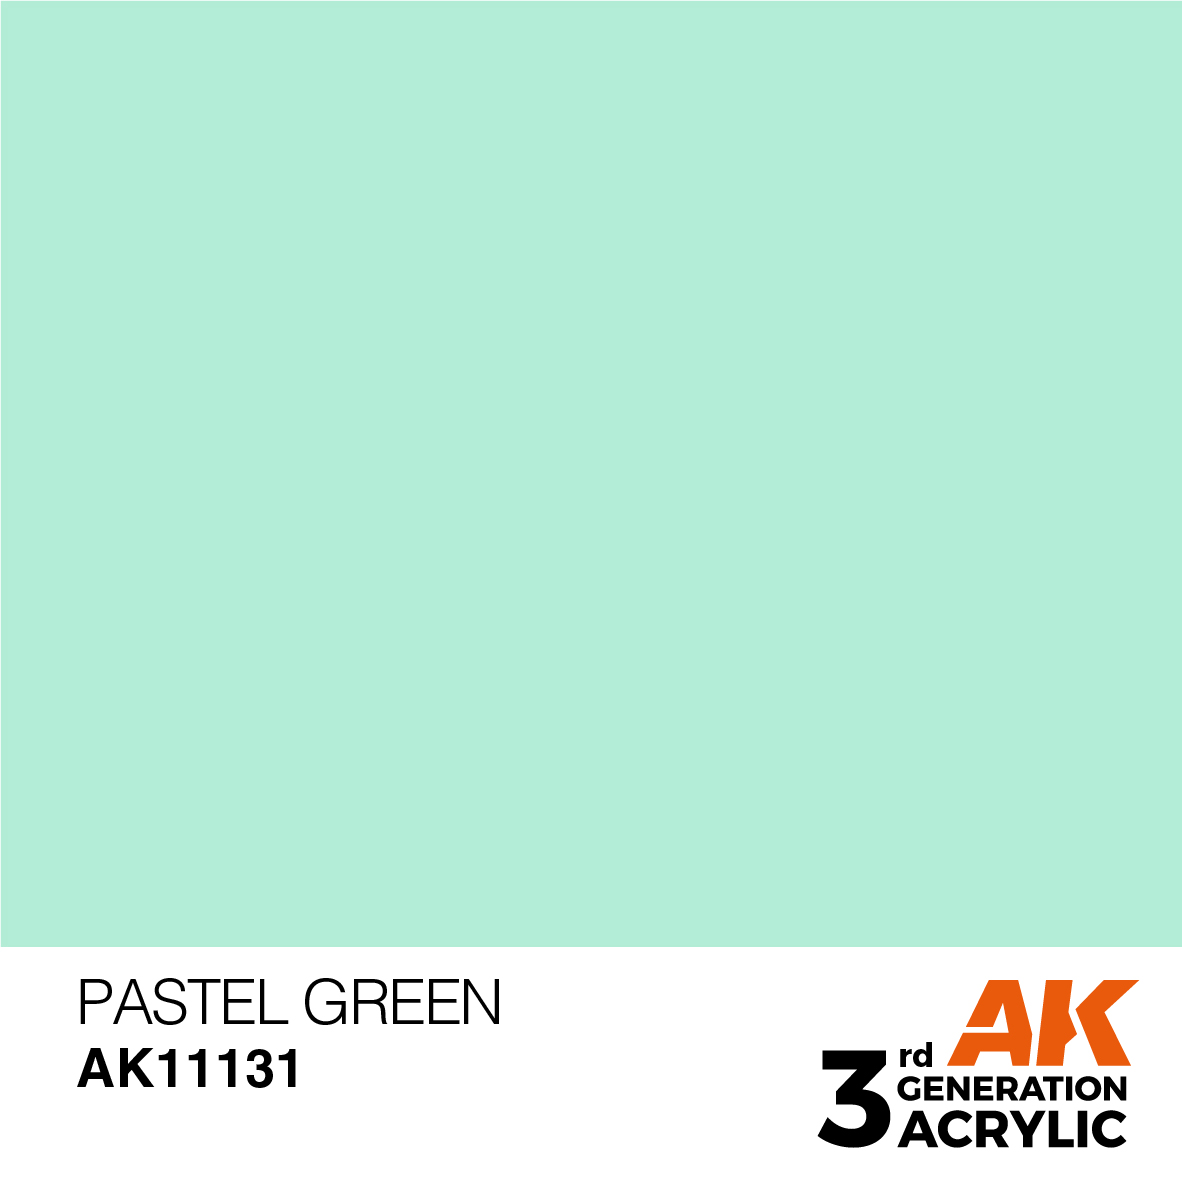 AK11131 Pastel Green (3rd-Generation) (17mL)